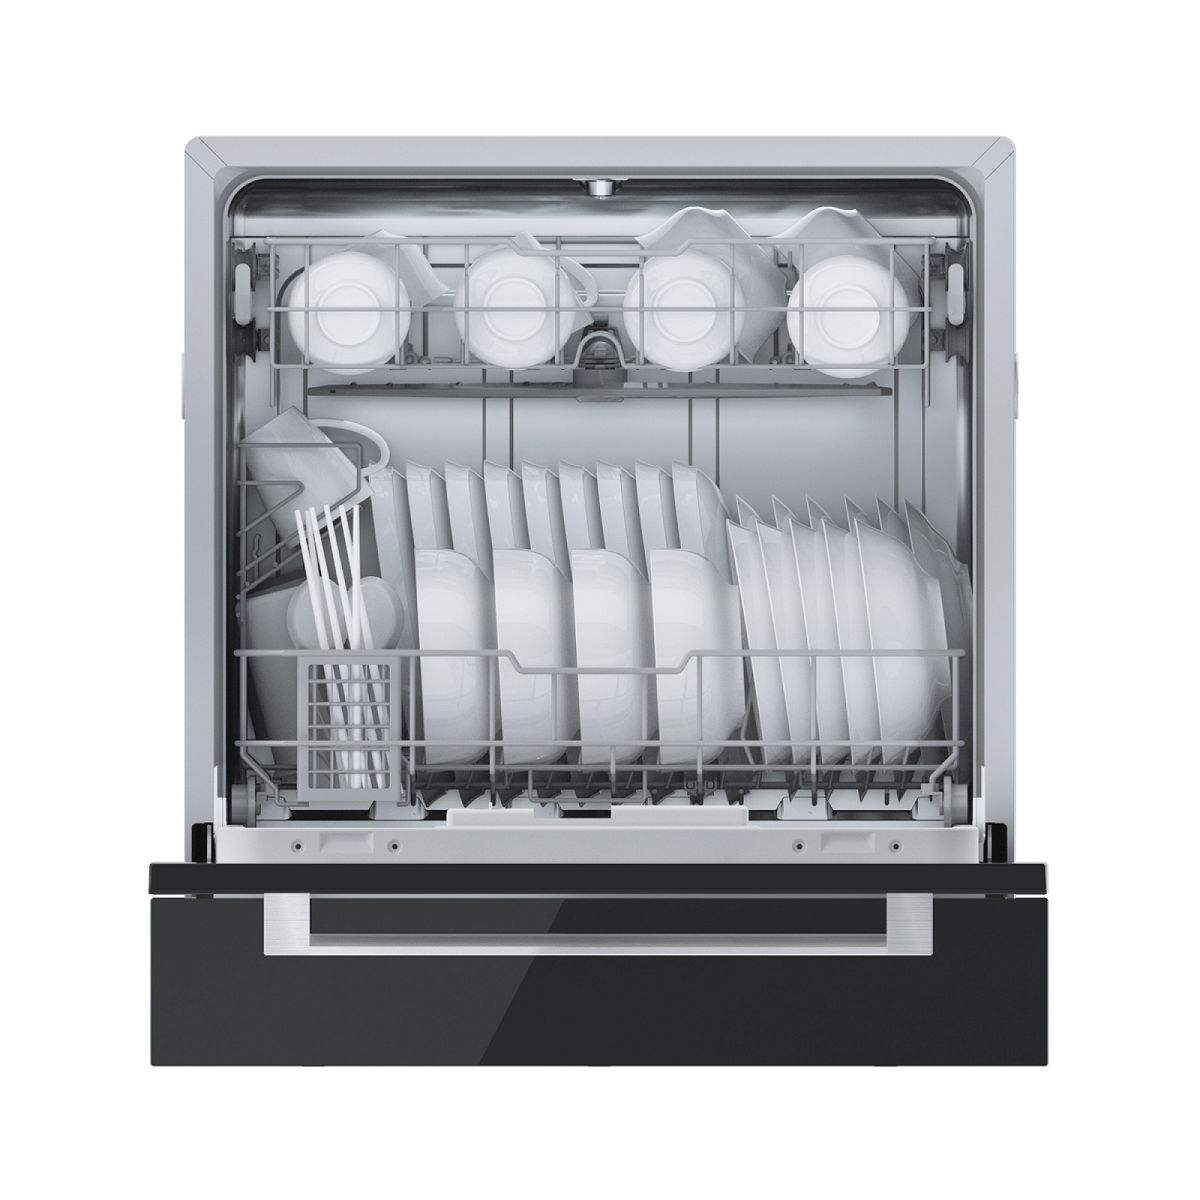 德意电器 大水压强力洗 高压喷淋 75℃高温热水全面喷射 热风烘干+余温烘干 洗碗机DS5616